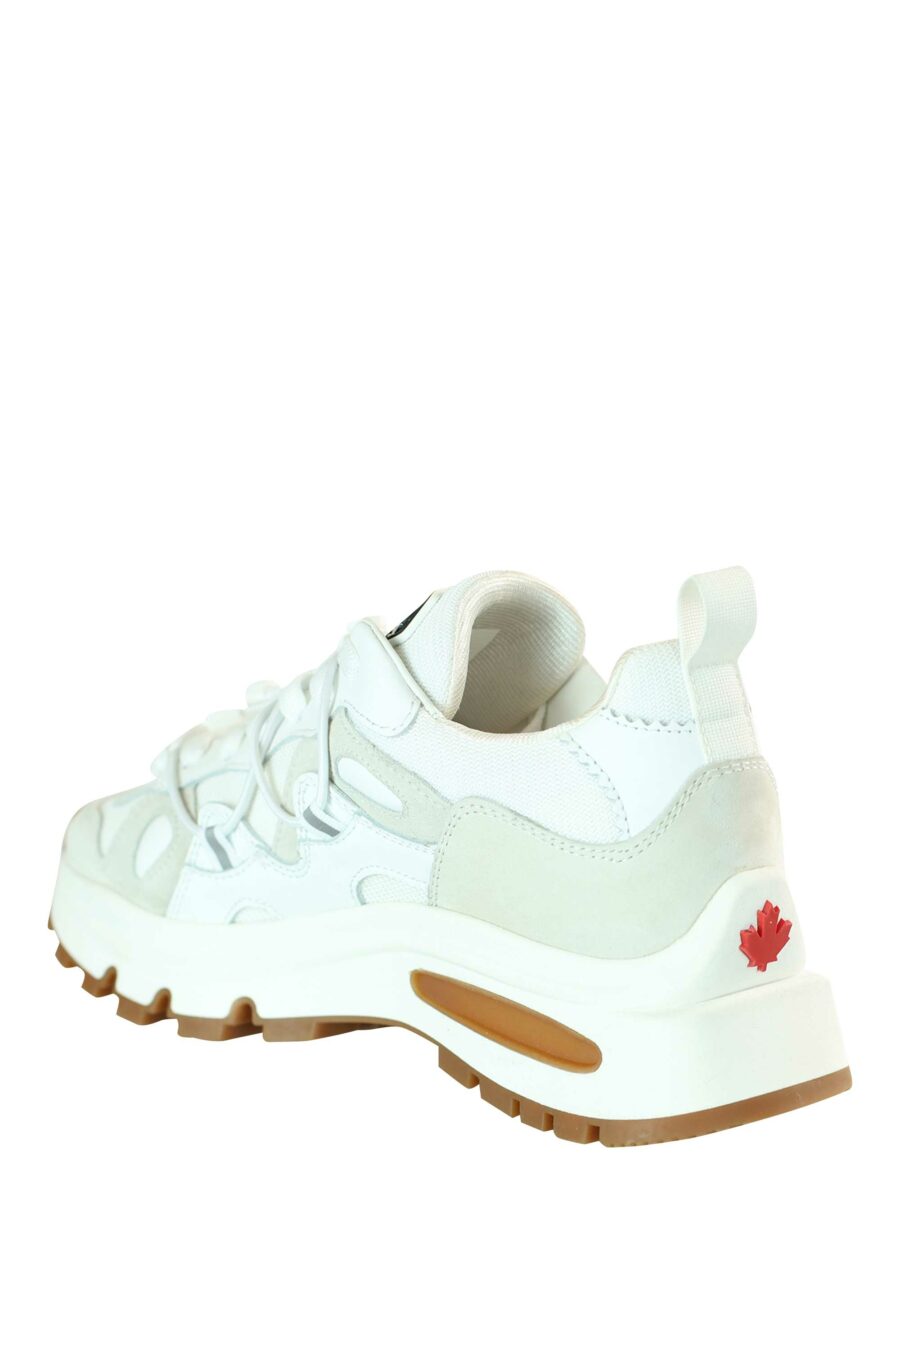 Zapatillas mix blanco con plataforma blanca y suela marrón - 8055777195864 4